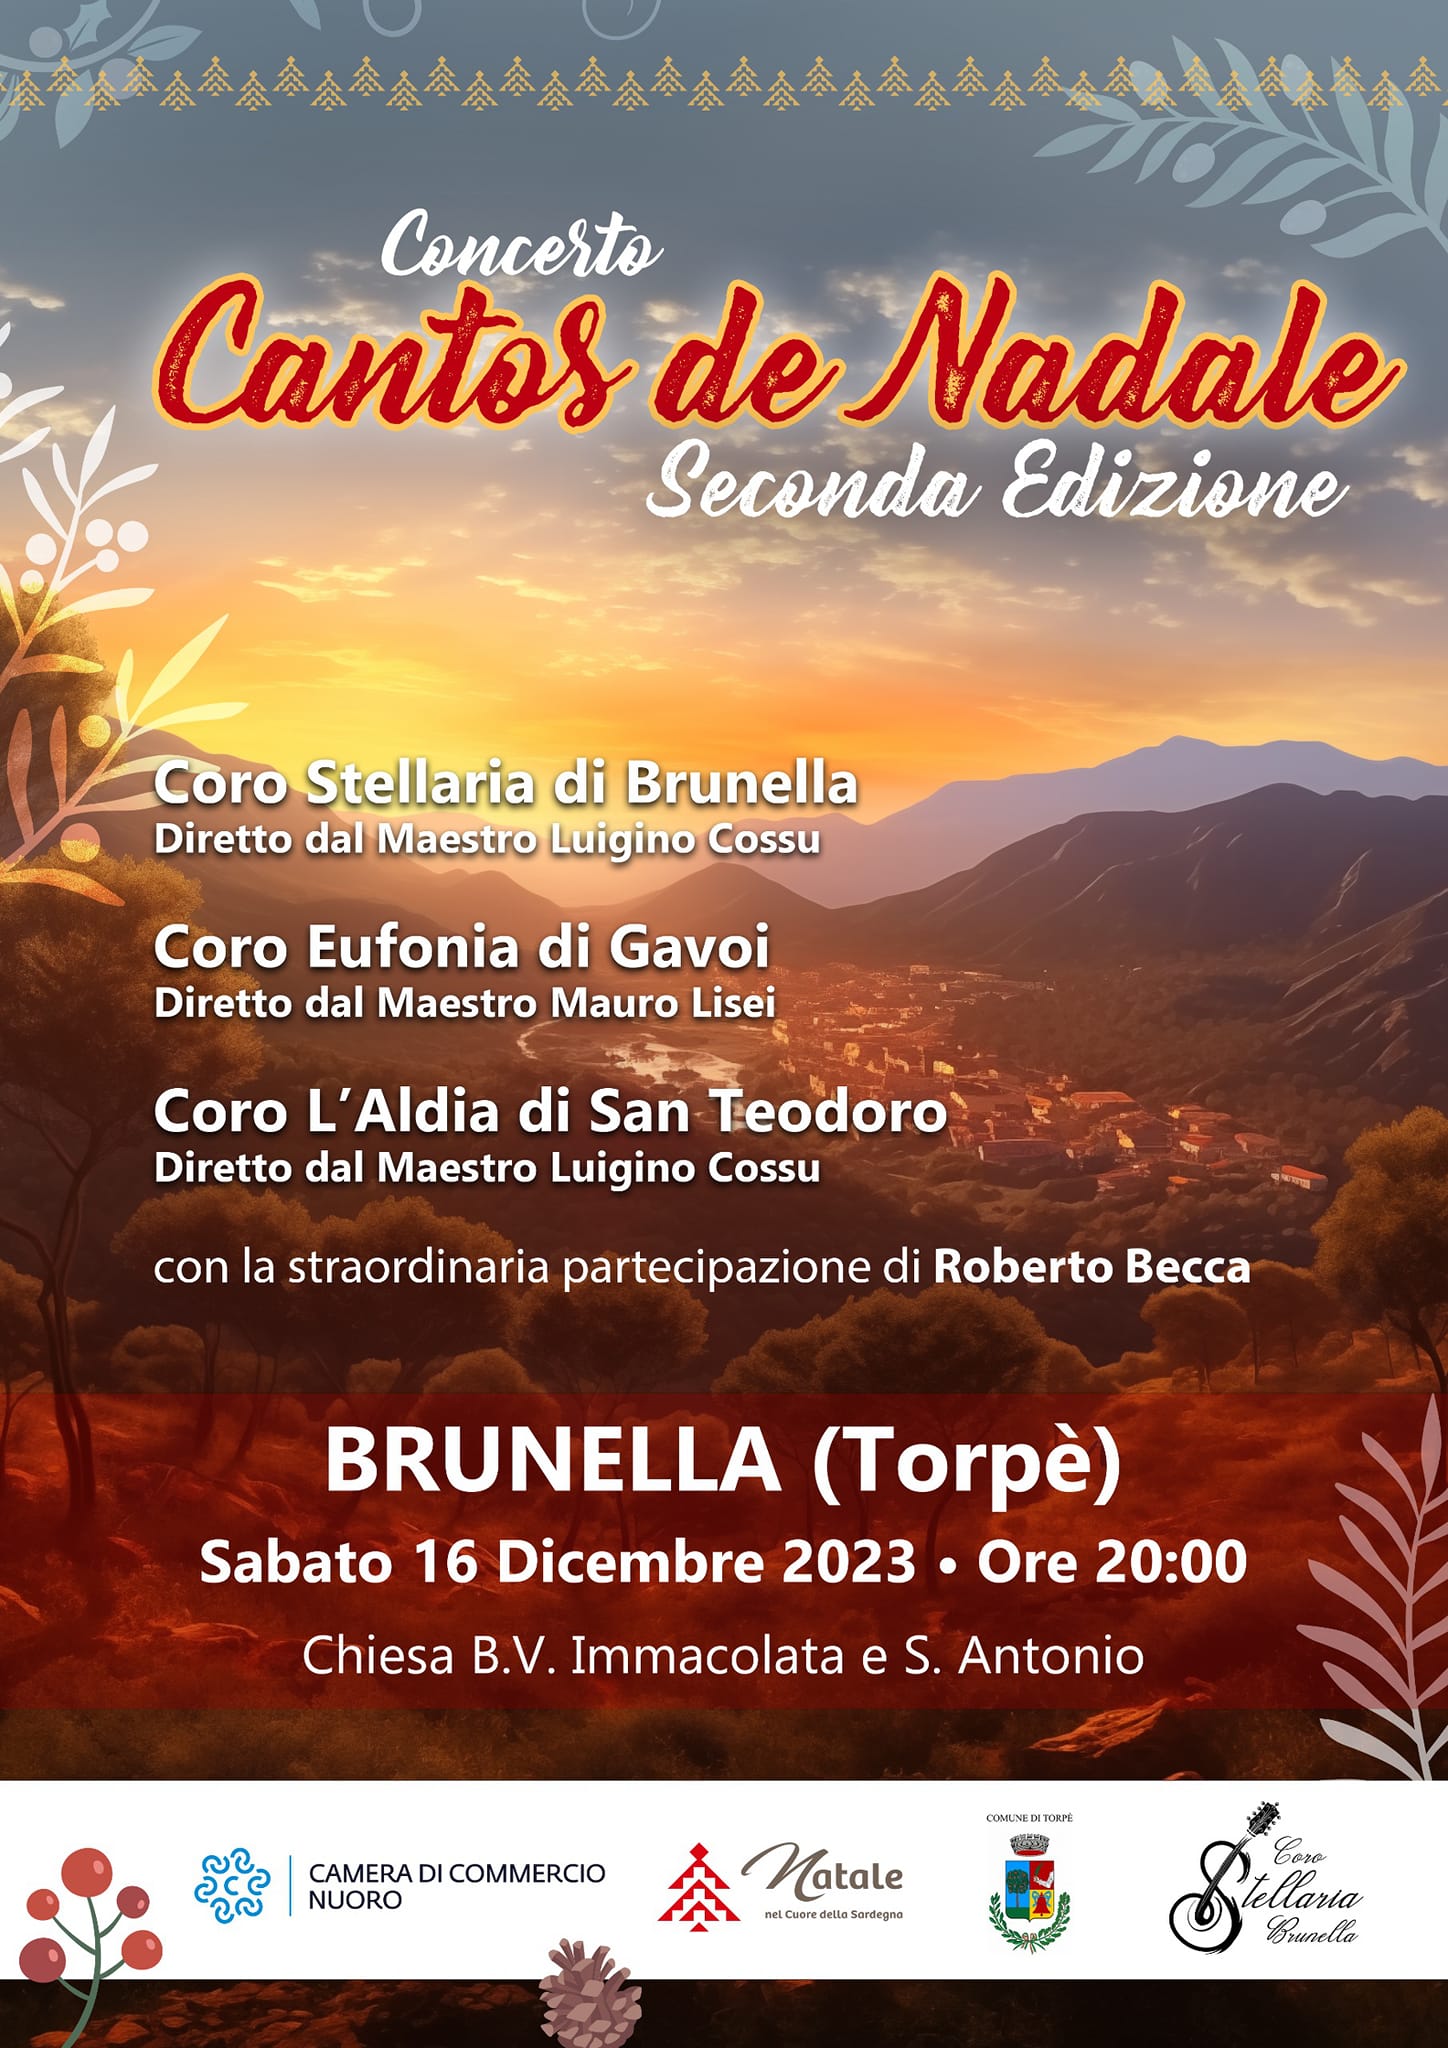 Cantos de Nadale Brunella 2023.jpg